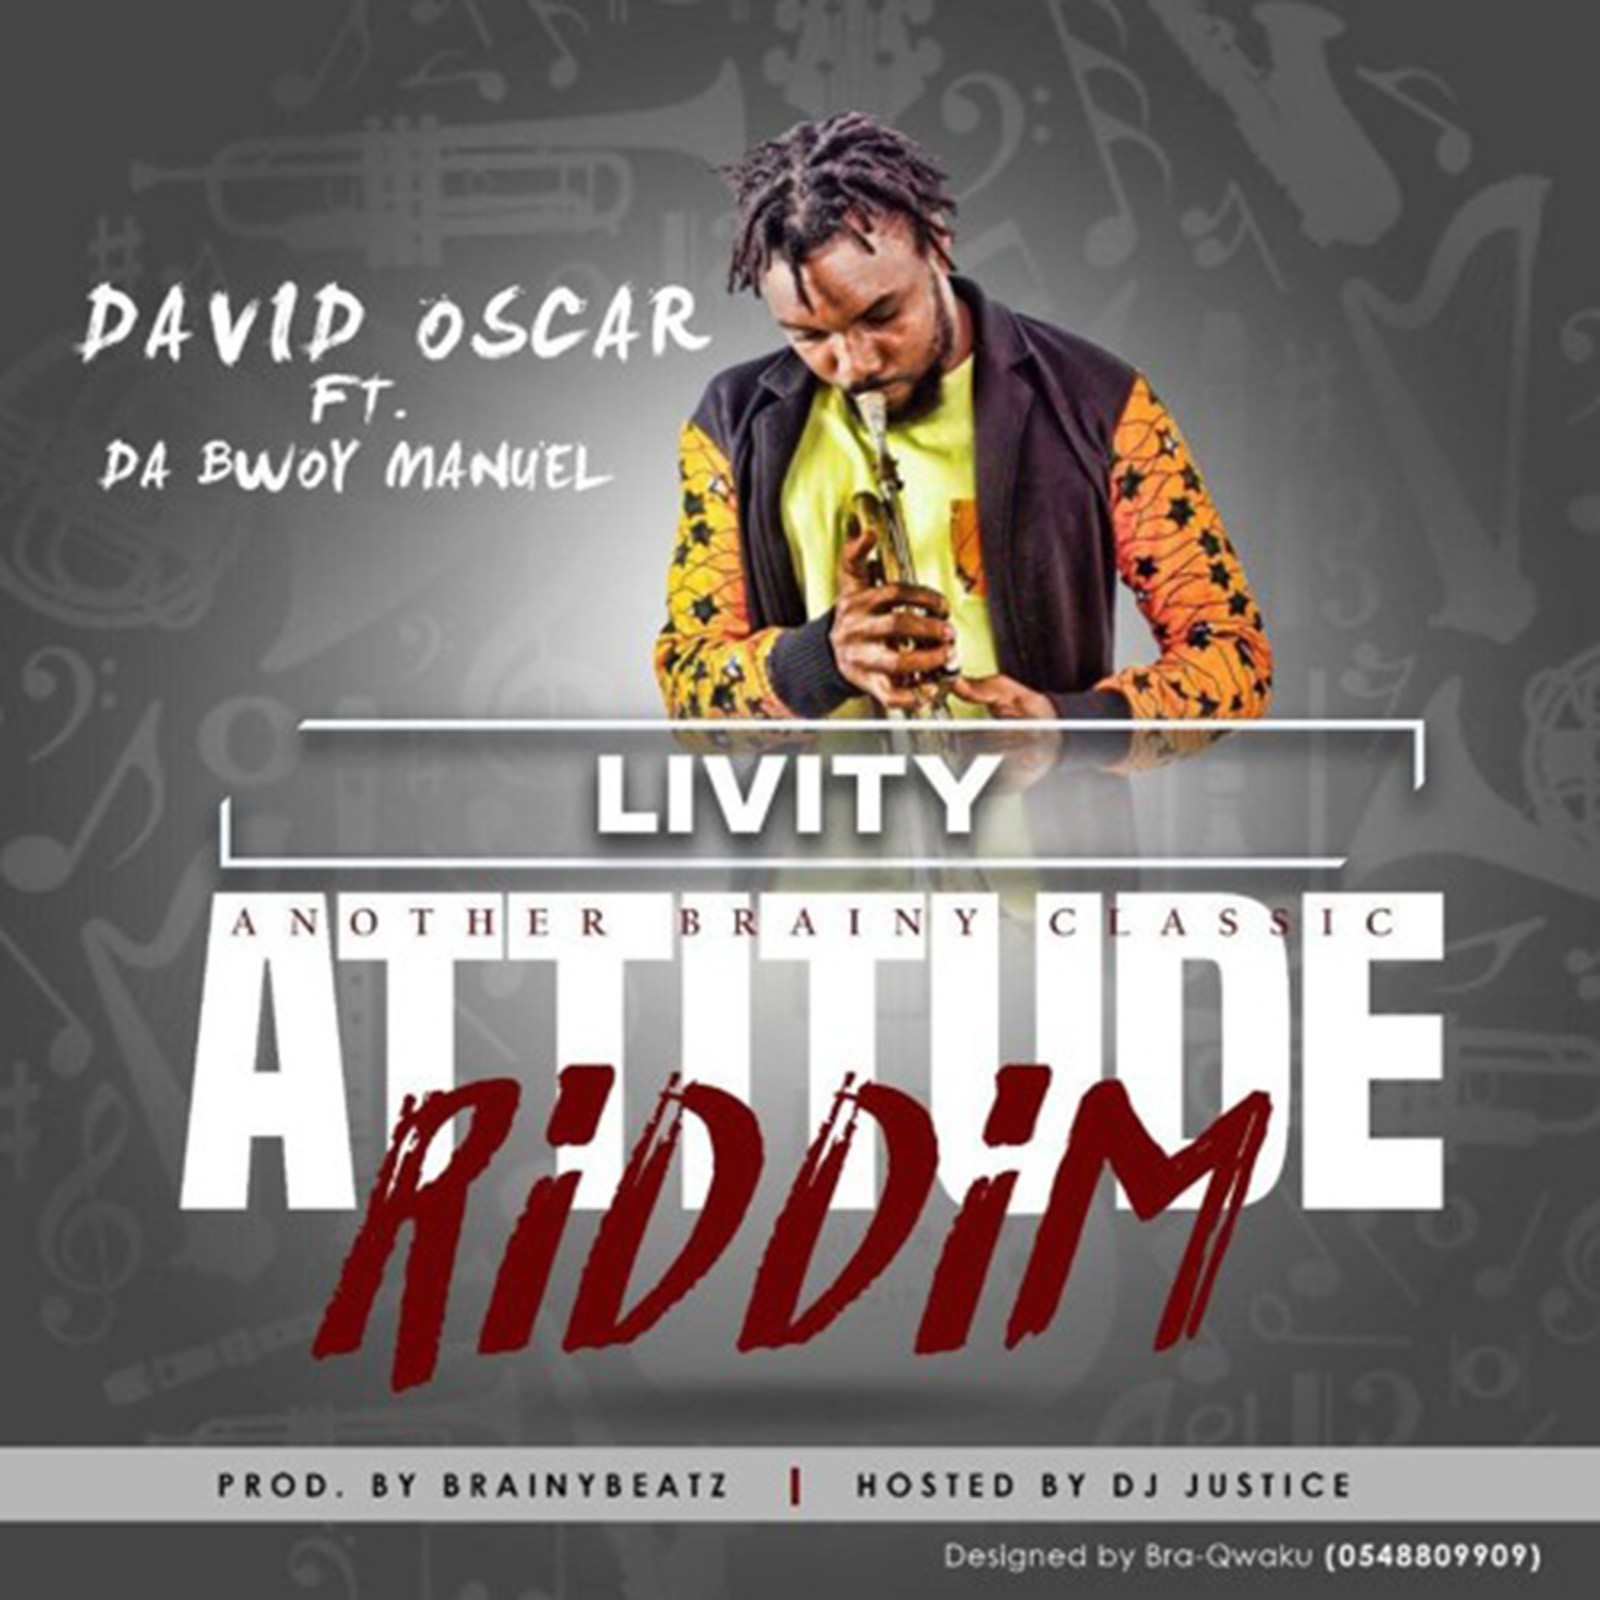 Livity (Attitude Riddim) by David Oscar feat. Da Bwoy Manuel